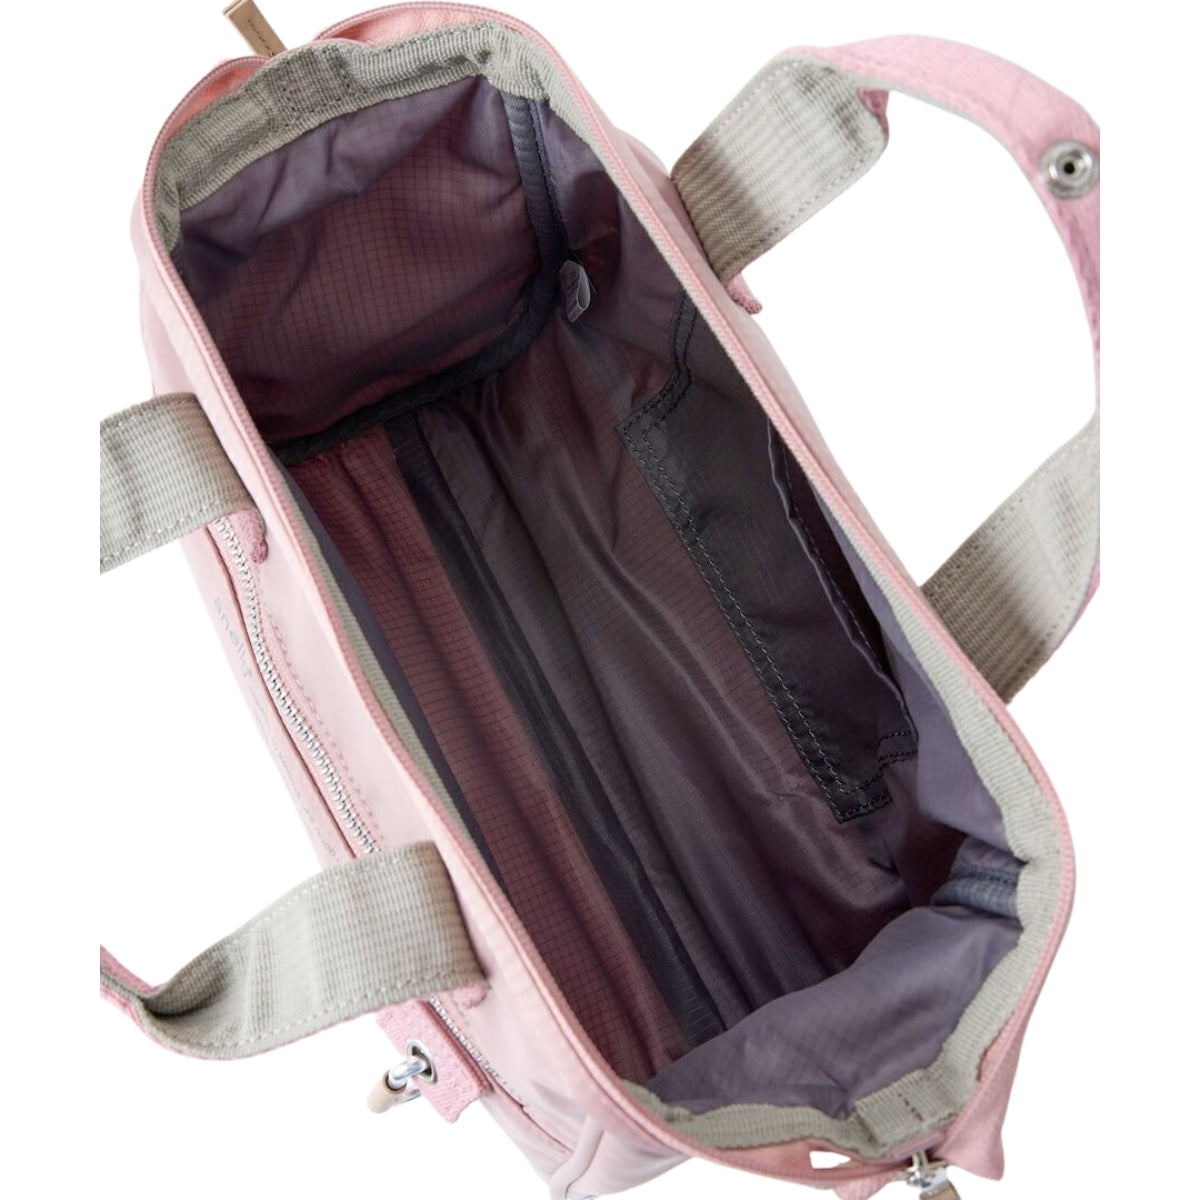 Anello Eleanor Shoulder Bag in Light Pink